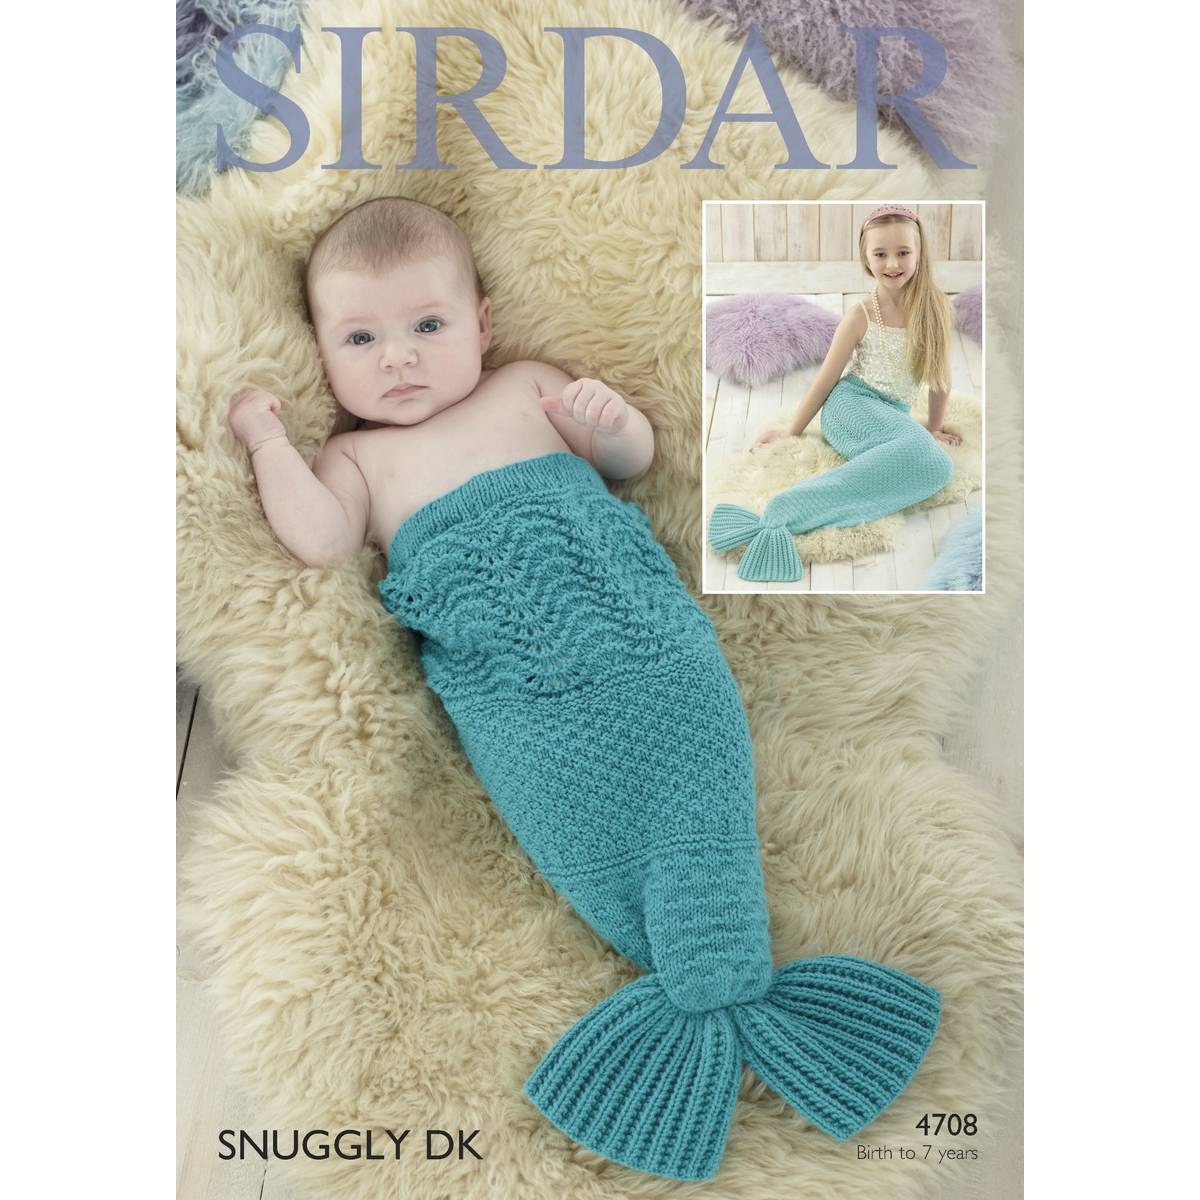 Mermaid Crochet Pattern For Baby Sirdar Snuggly Dk Mermaid Tail Pattern 4708 Hobcraft